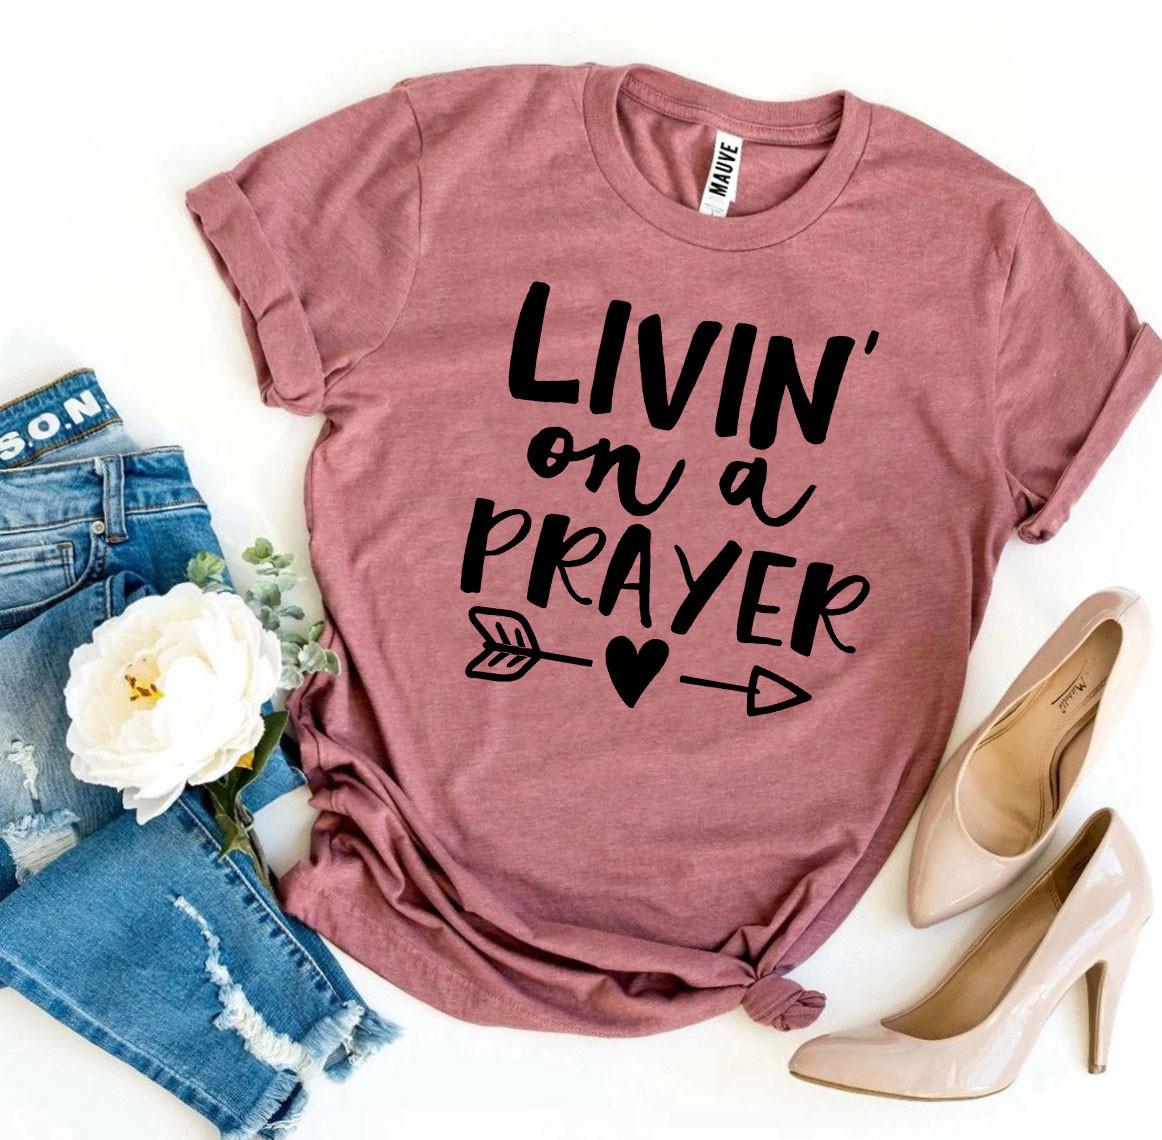 Livin' on a Prayer - Tshirtshop - Sticker